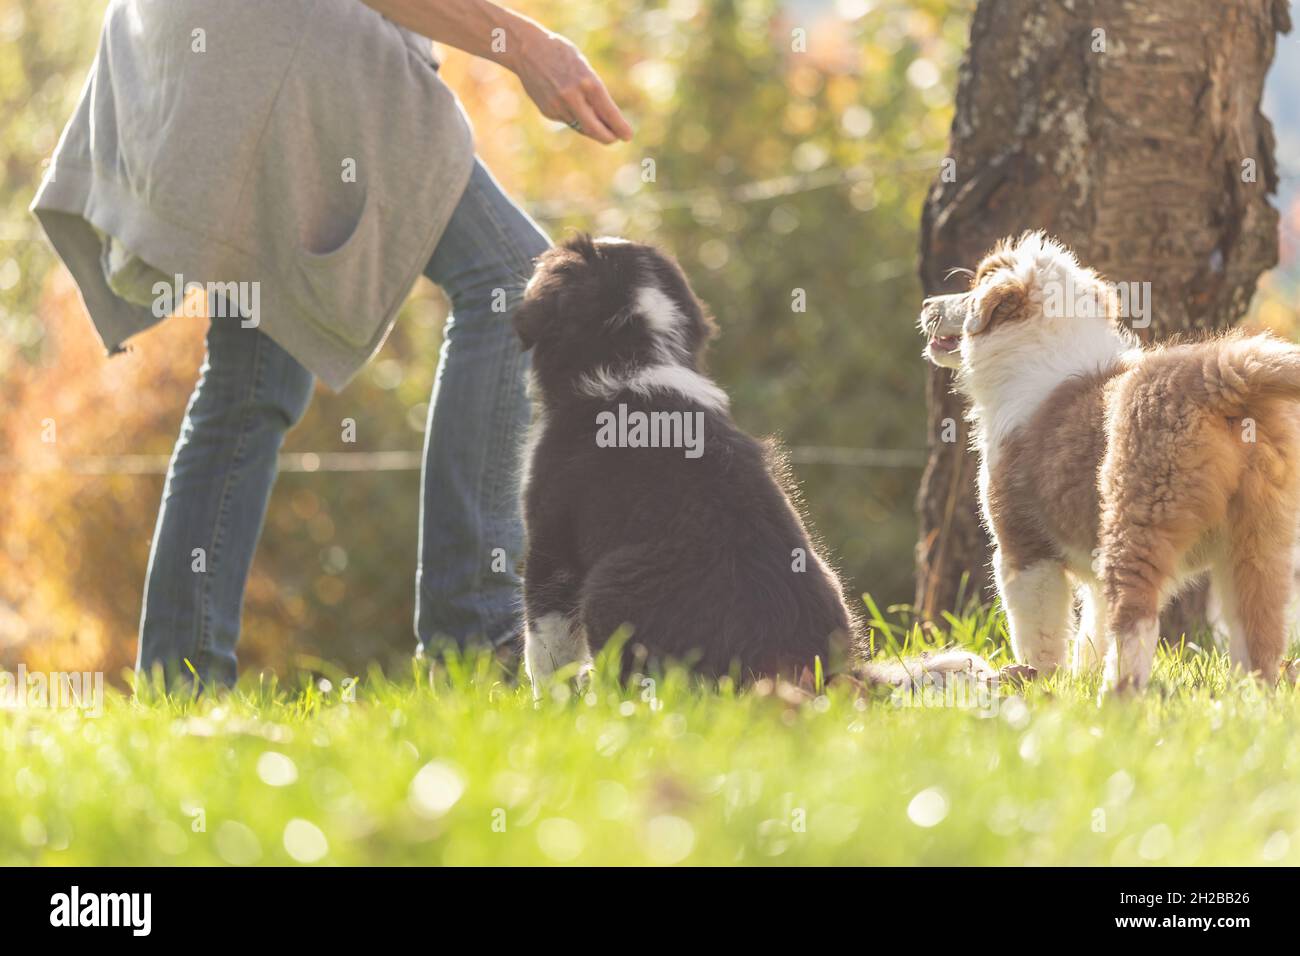 Eine Hundeführerin gibt liebevoll erste Lektionen im Gehorsam gegenüber niedlichen australischen Schäferhunden Stockfoto